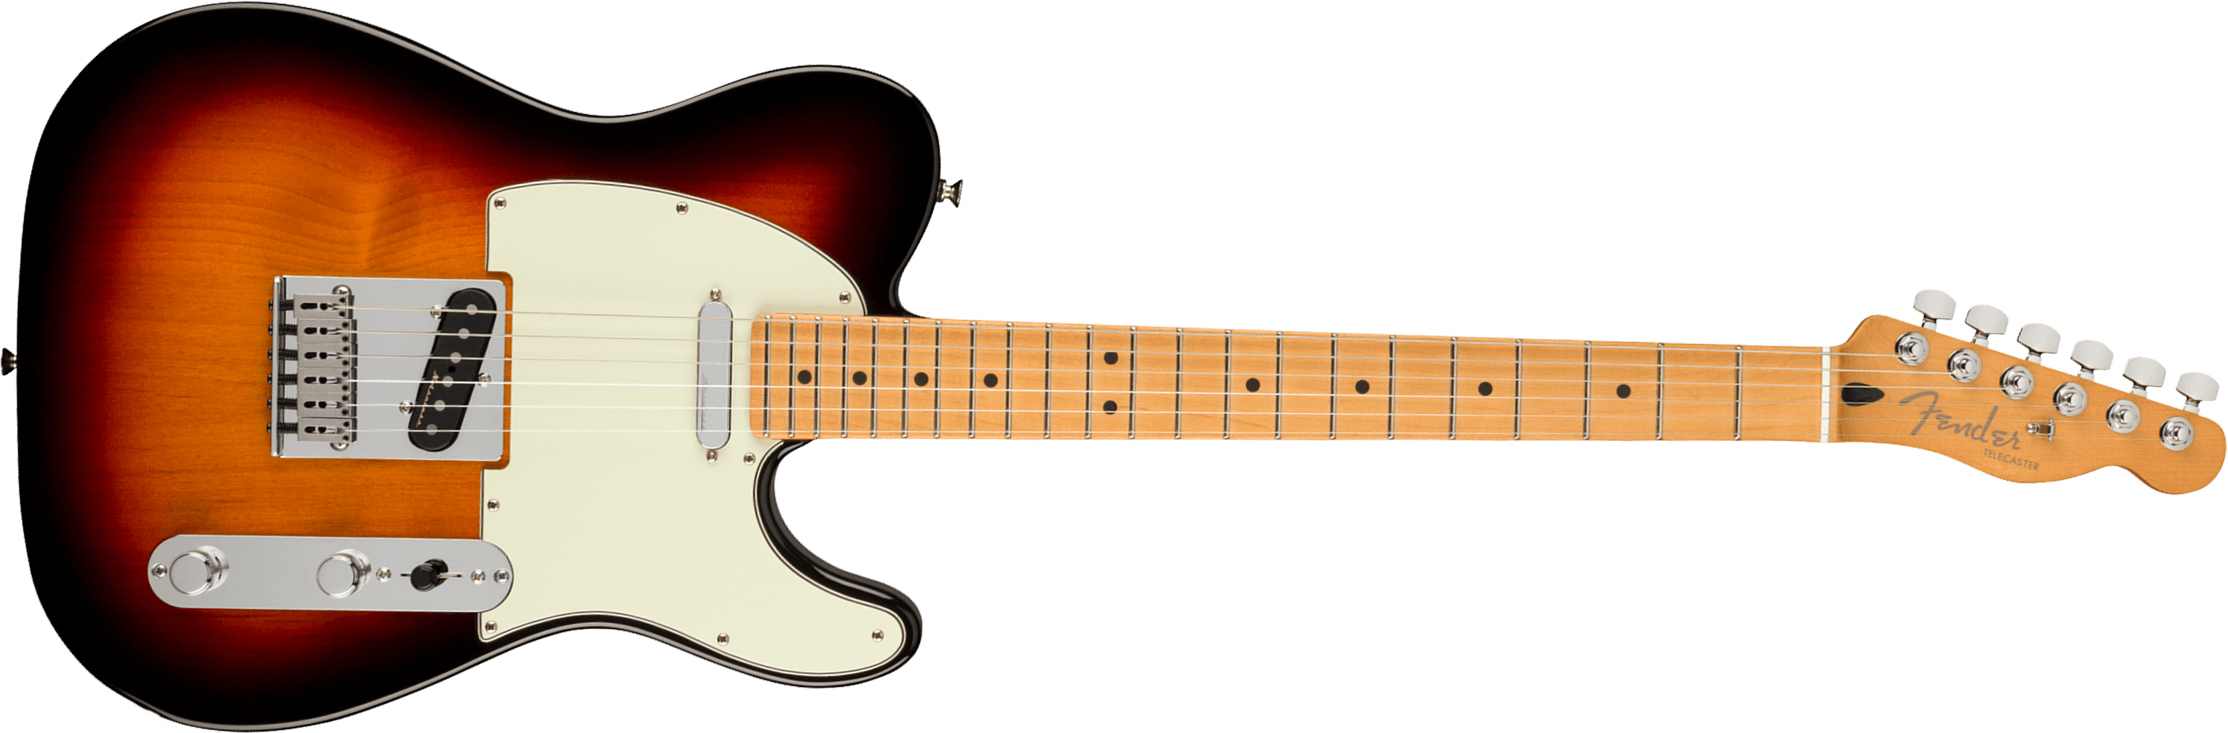 Fender Tele Player Plus Mex 2s Ht Mn - 3-color Sunburst - Televorm elektrische gitaar - Main picture